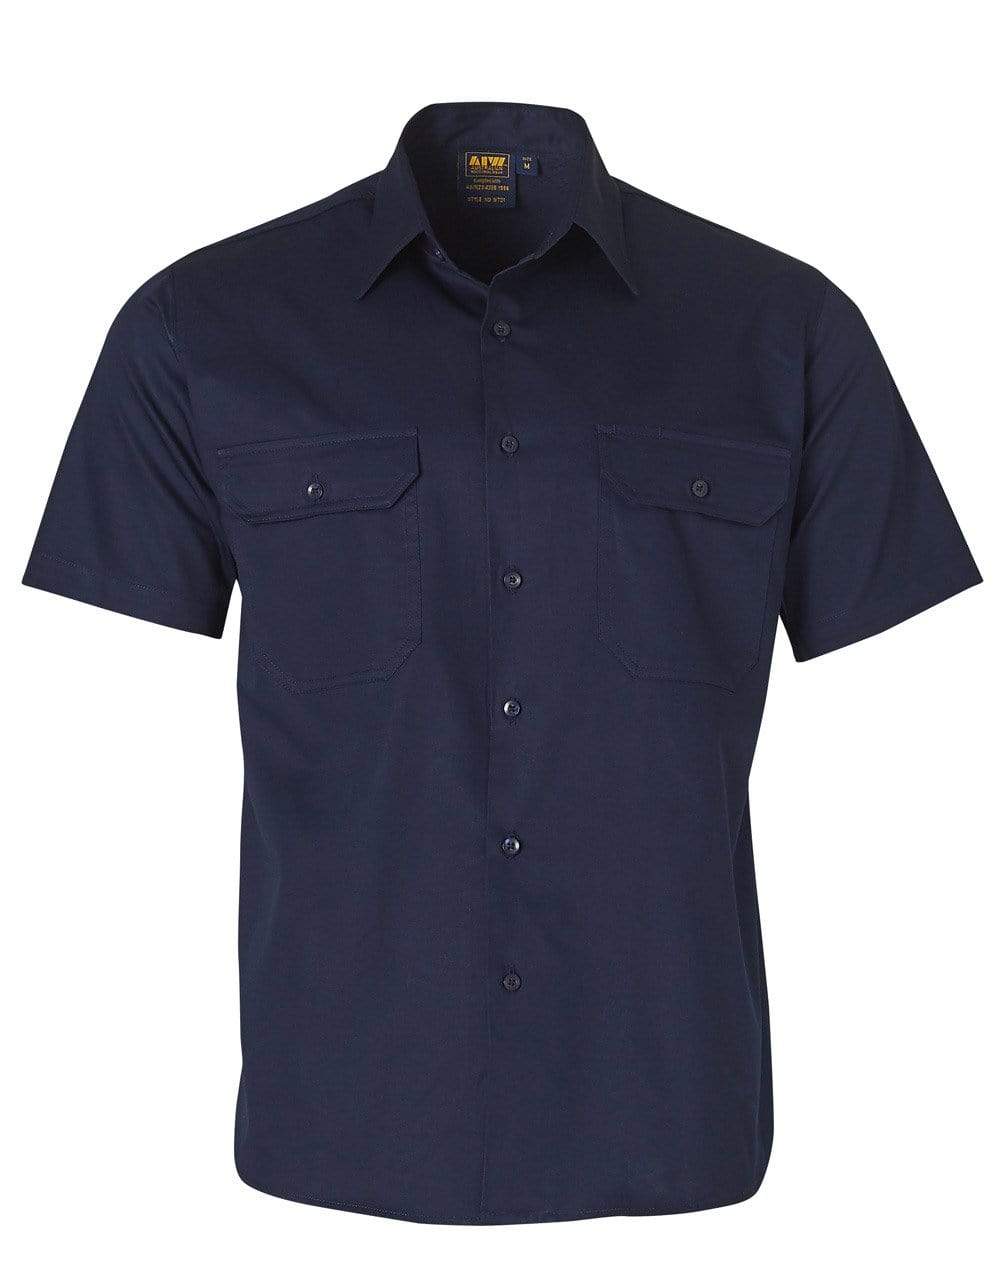 Australian Industrial Wear Work Wear Navy / S COTTON work shirt WT01